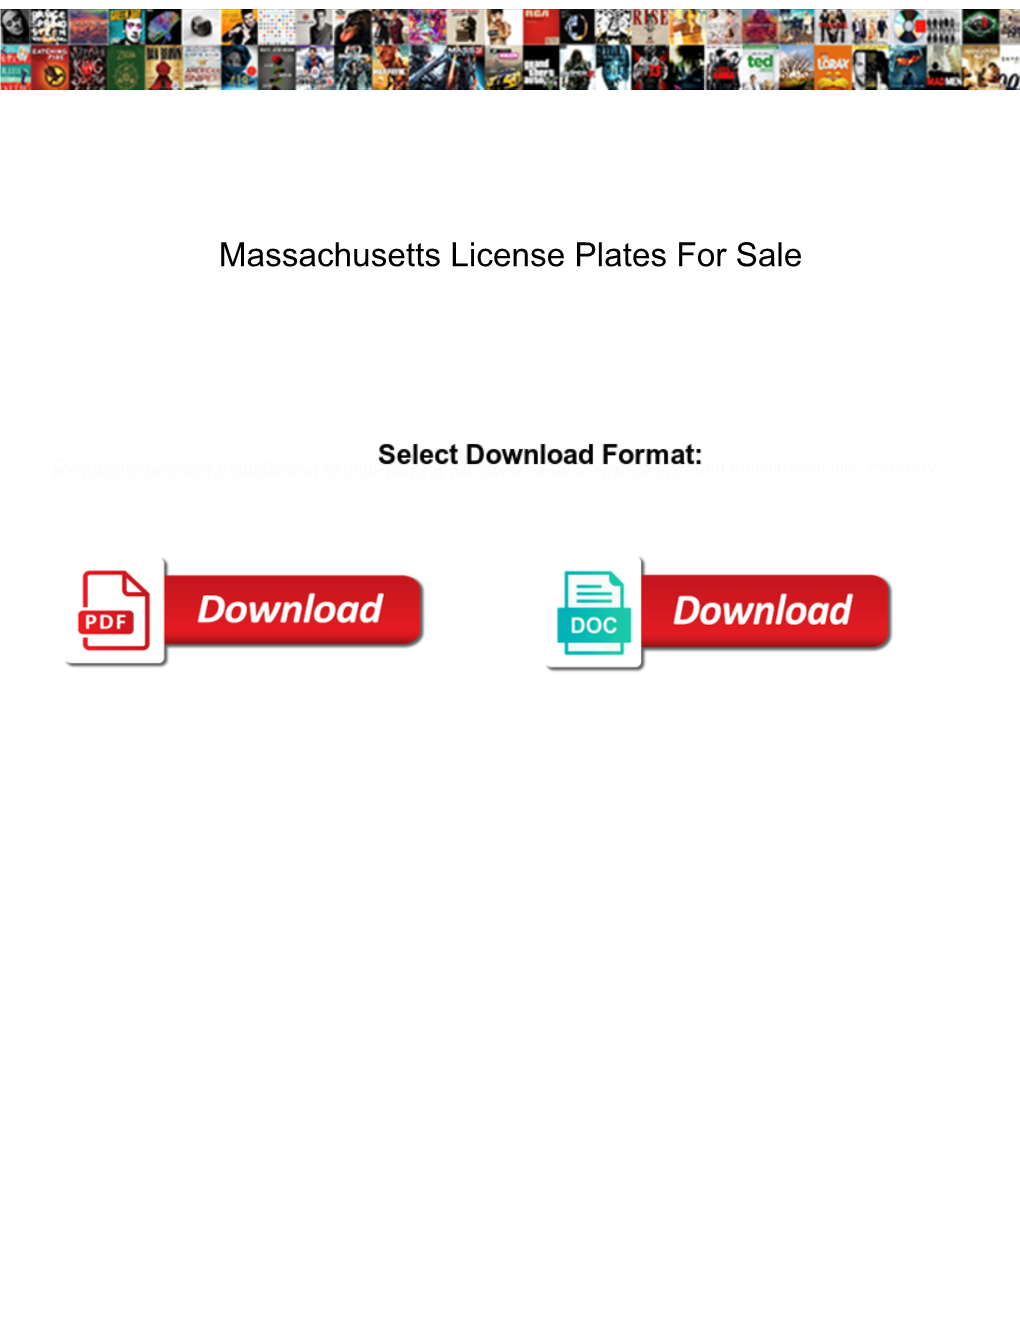 Massachusetts License Plates for Sale